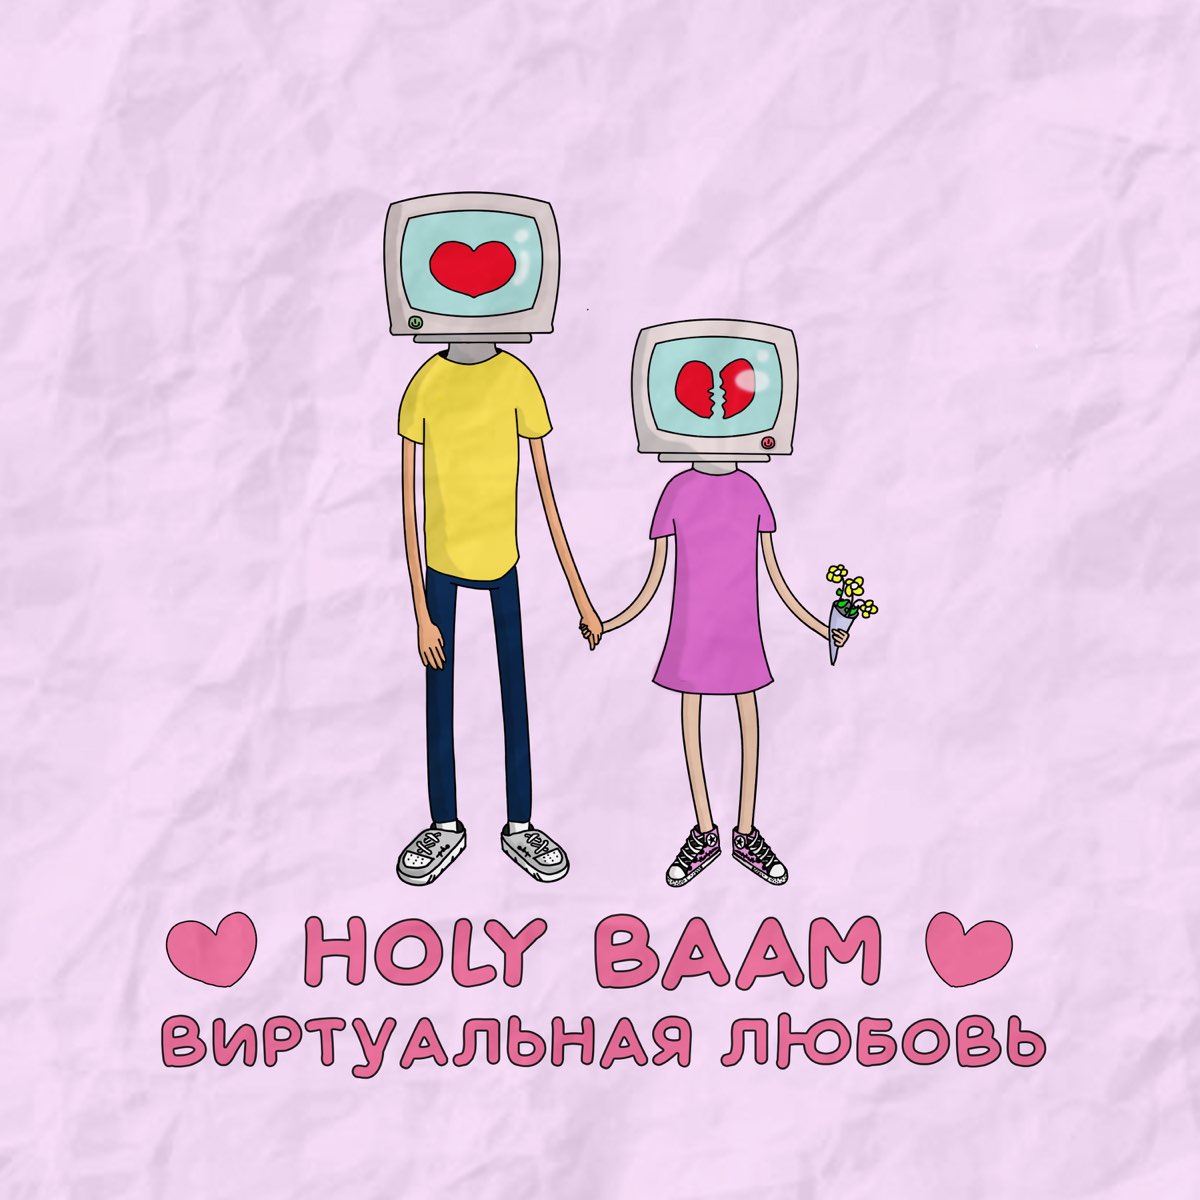 Холе баам. Холи баам. Виртуальная любовь Holy BAAM. Холи баам ава. Холи баам аватарка.